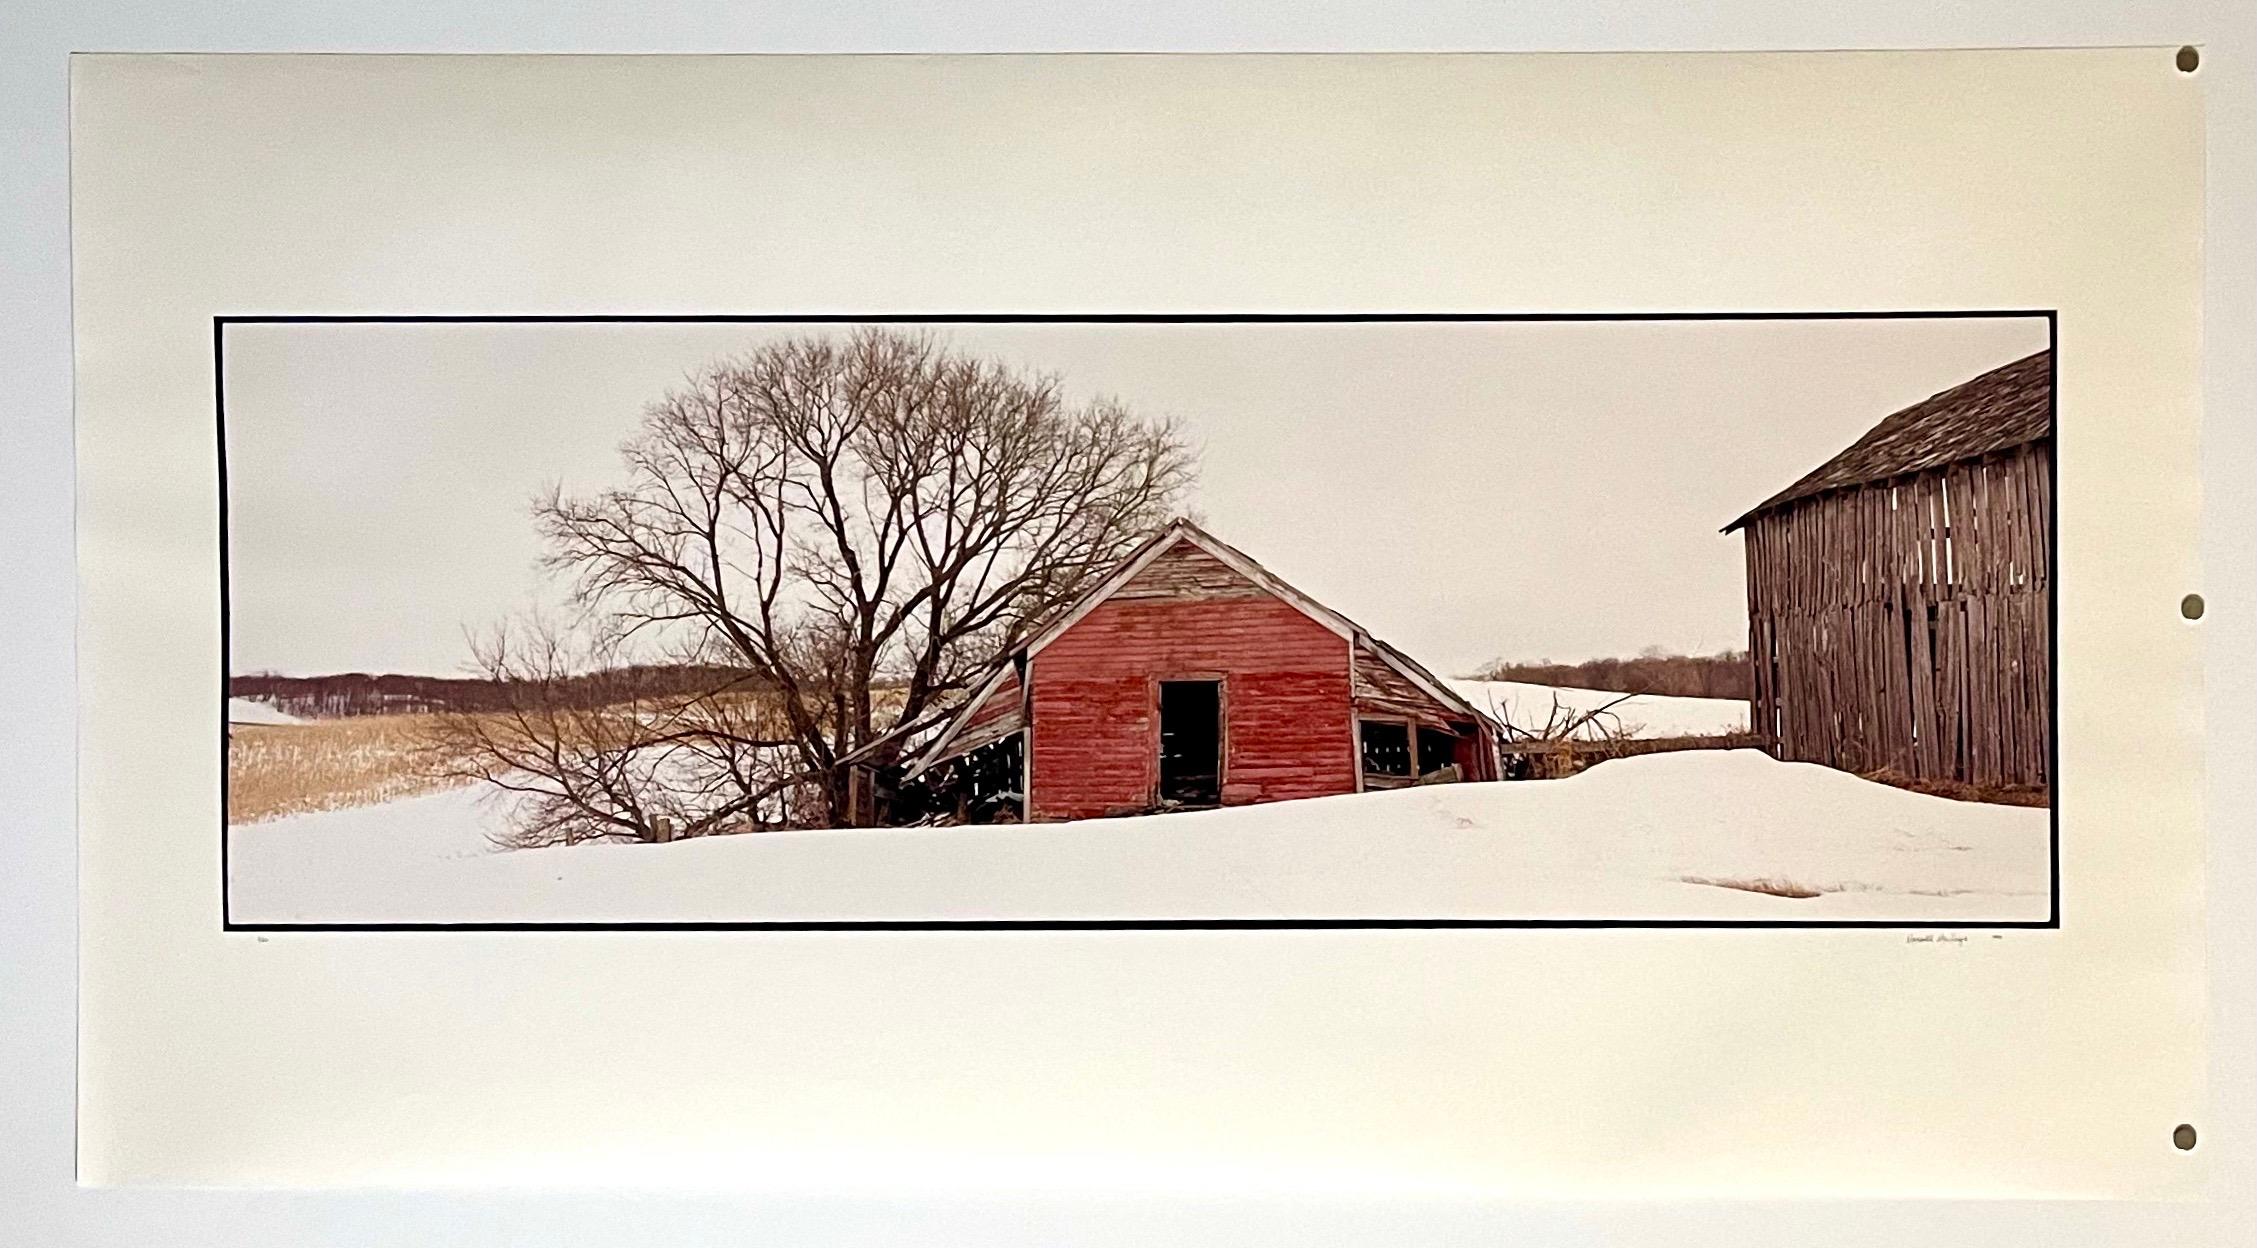 Maison d'habitation du canton de Maplewood, hiver 1993
Fabuleuse photographie de paysage américain d'une scène rurale. 
d'une petite édition de 20 exemplaires signés à la main
Tirage chromogène grand format sur papier professionnel Kodak
Les